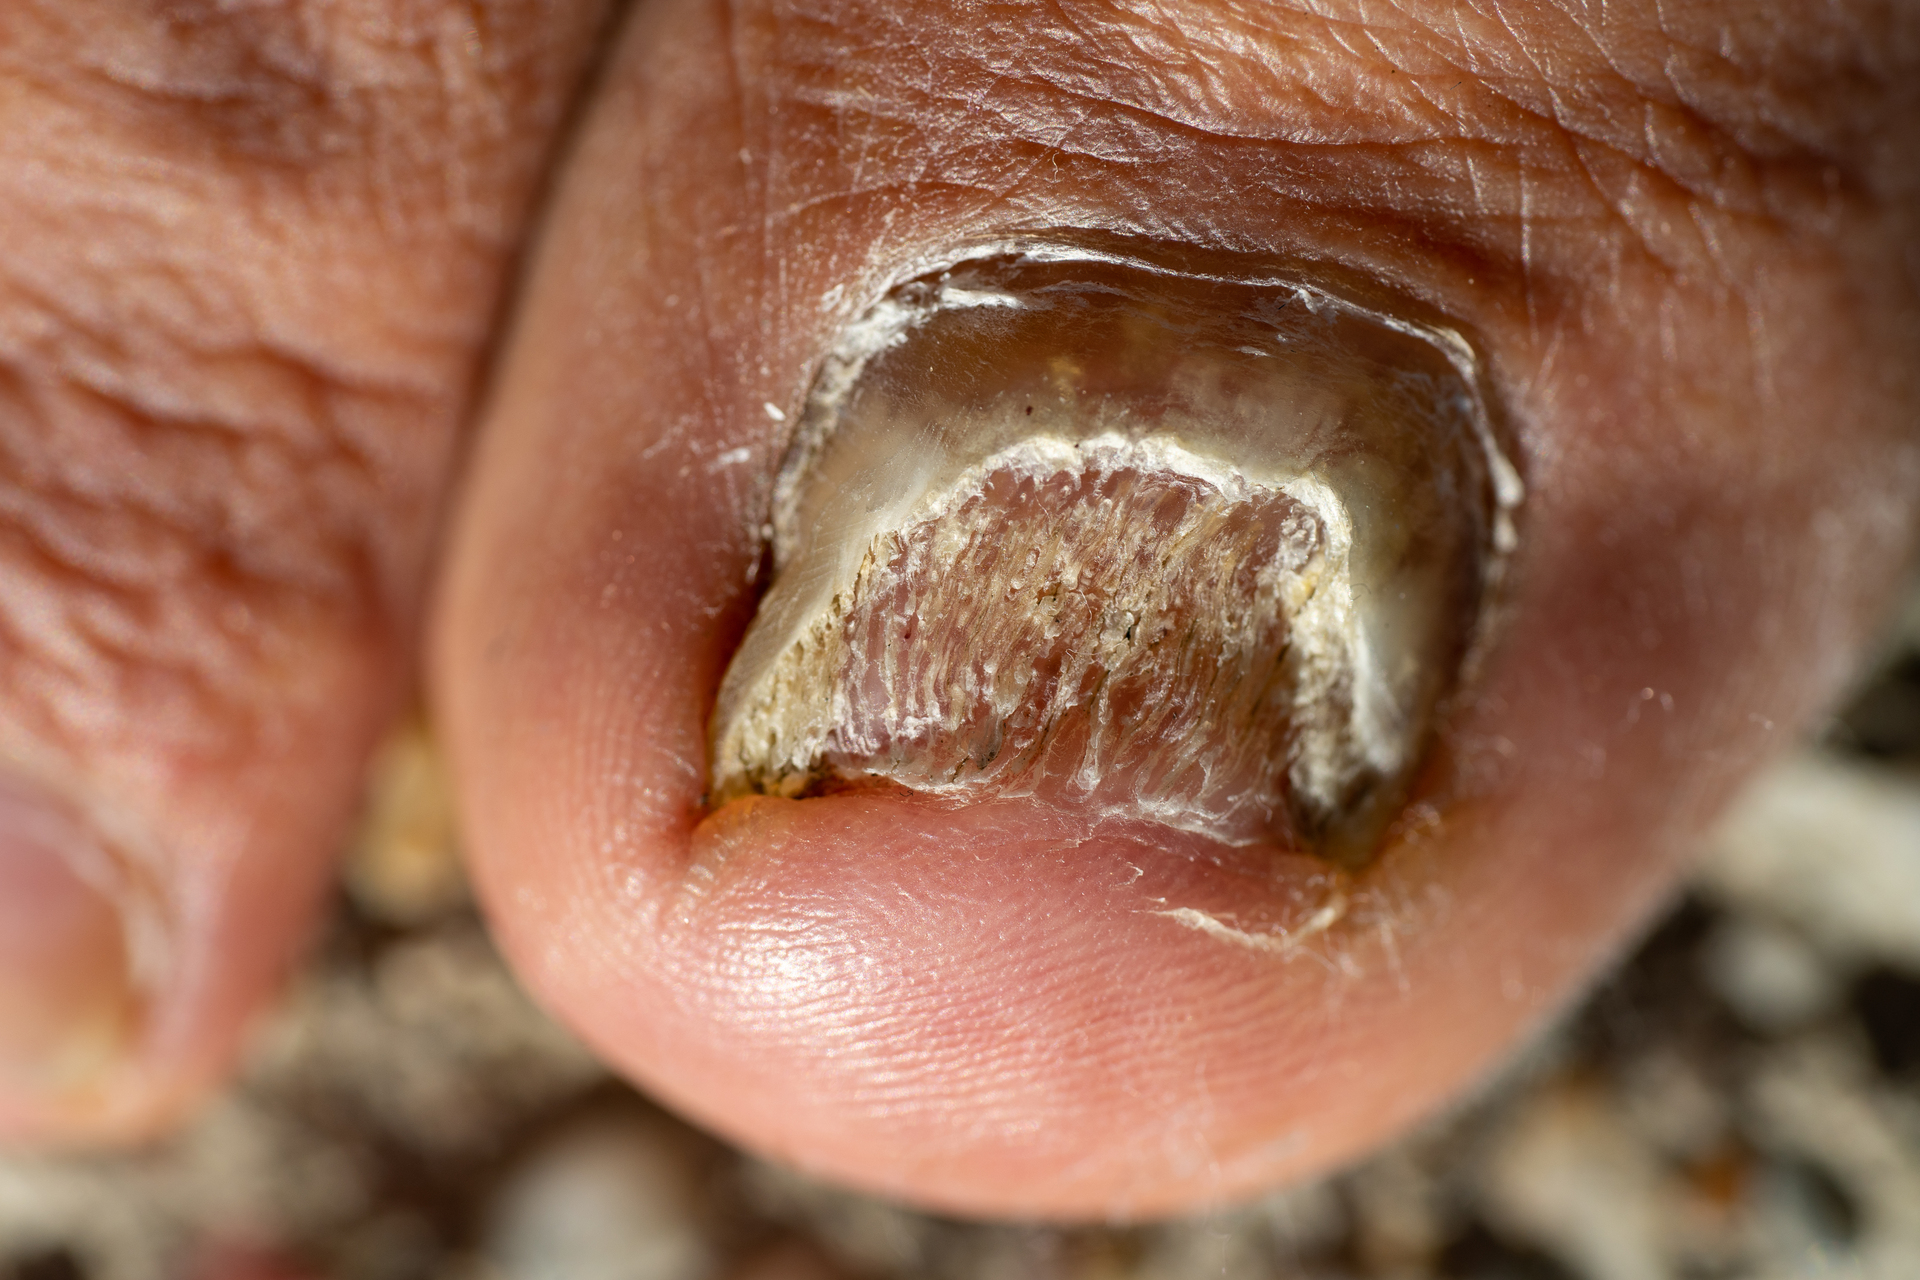 Na tym obrazku widzimy zbliżenie na stopę, na której widoczna jest choroba paznokci. Paznokieć jest dotknięty nieprawidłowościami, które wskazują na obecność schorzenia.Paznokieć jest zdeformowany i ma różne nieprawidłowości. Może być pogrubiony, skorodowany, łamliwy, rozwarstwiony lub zmienić kolor. Te zmiany wskazują na możliwość występowania grzybicy paznokci, infekcji lub innego schorzenia paznokciowego